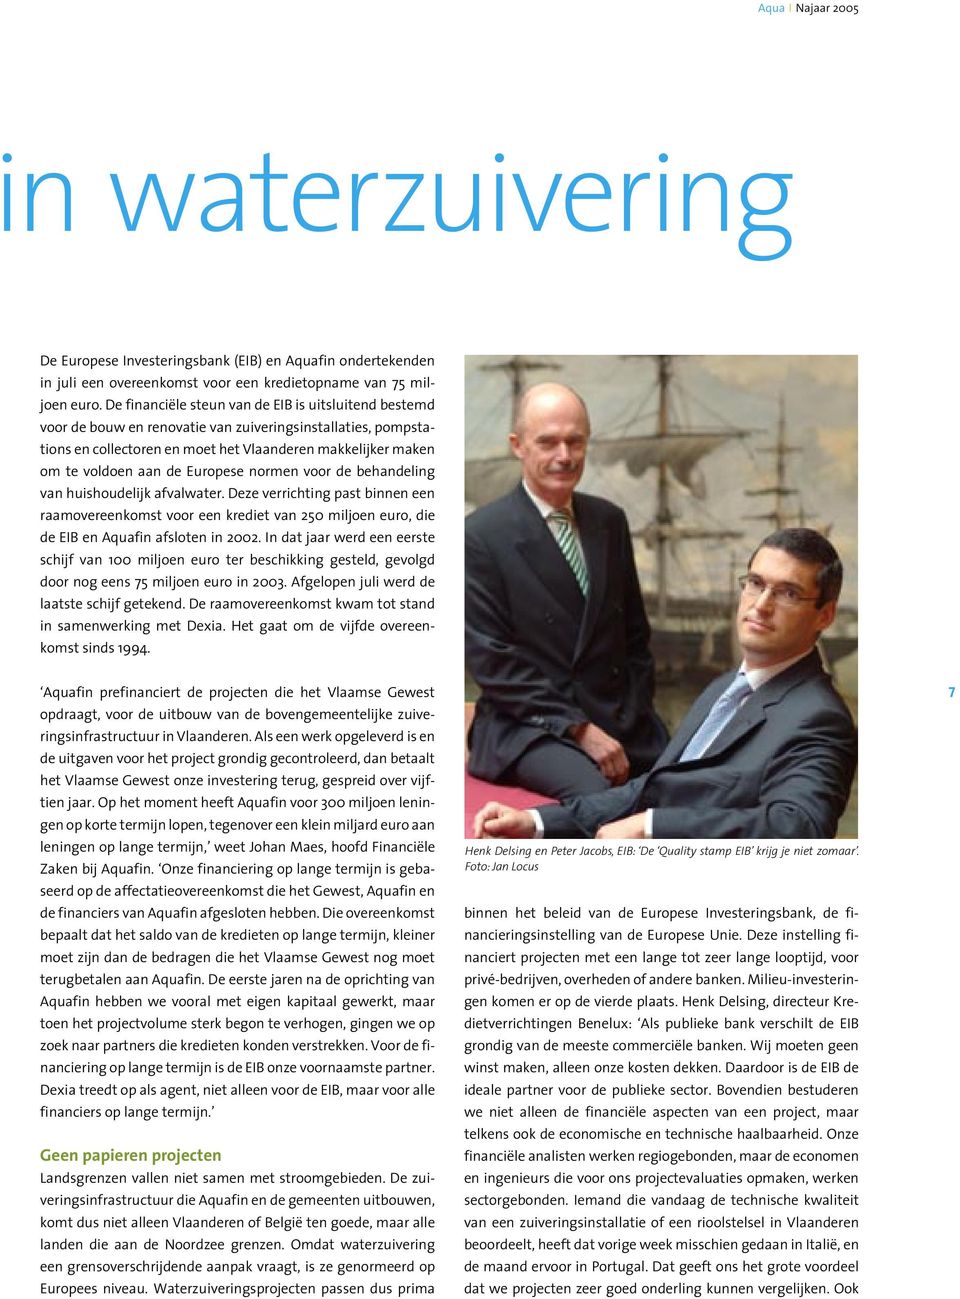 Europese normen voor de behandeling van huishoudelijk afvalwater. Deze verrichting past binnen een raamovereenkomst voor een krediet van 250 miljoen euro, die de EIB en Aquafin afsloten in 2002.